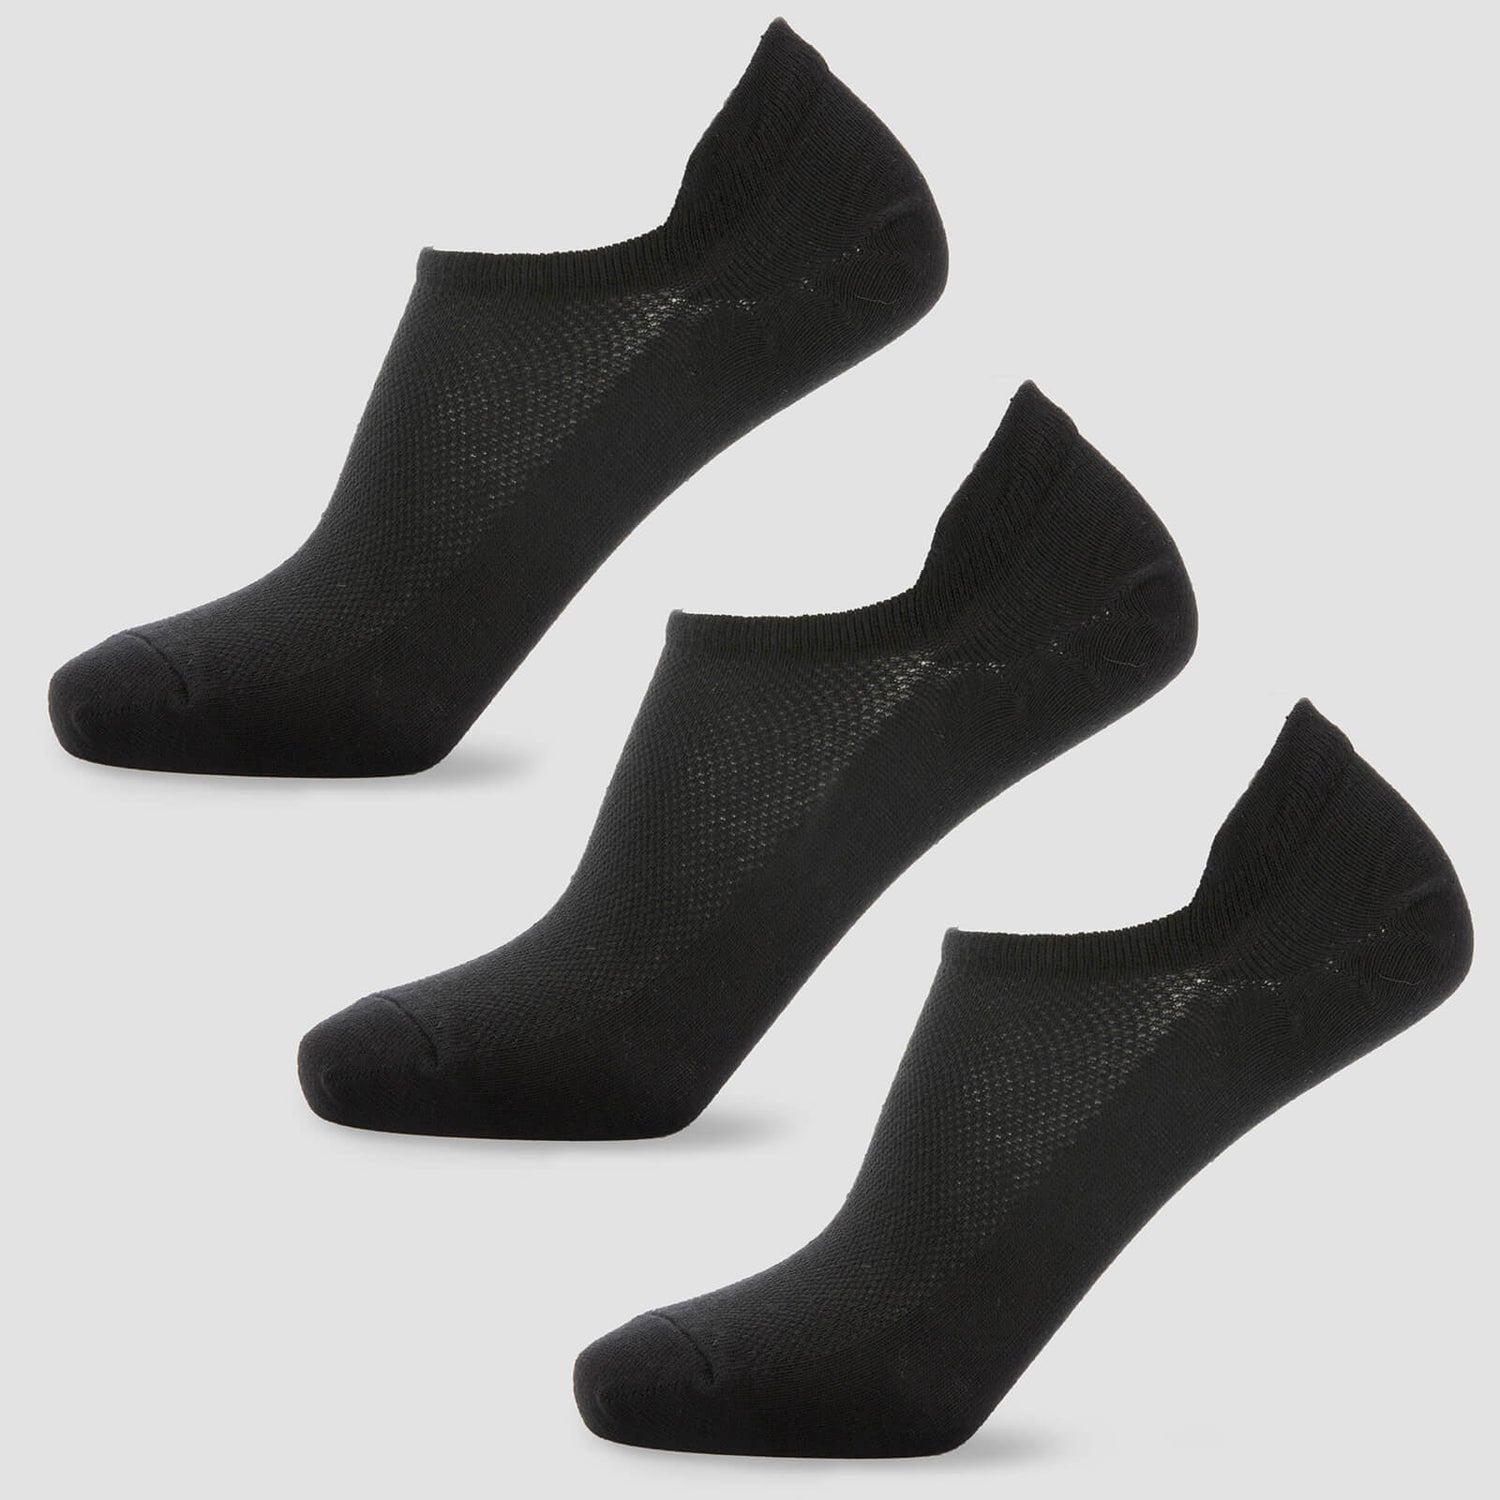 MP Women's Ankle Socks - Black (3 Pack) - UK 3-6